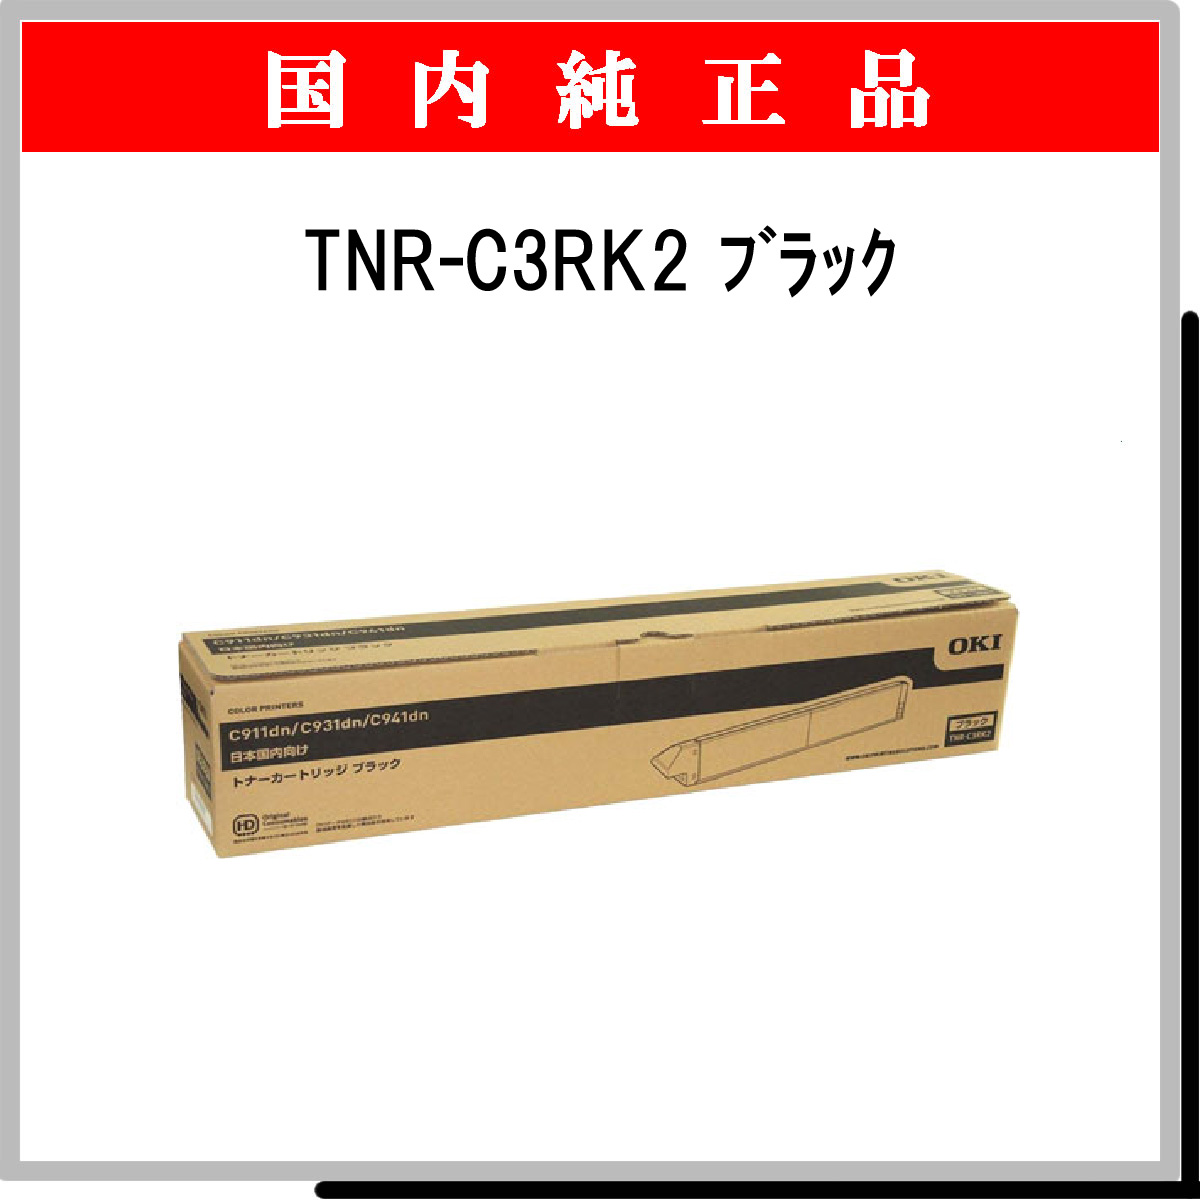 TNR-C3RK2 純正